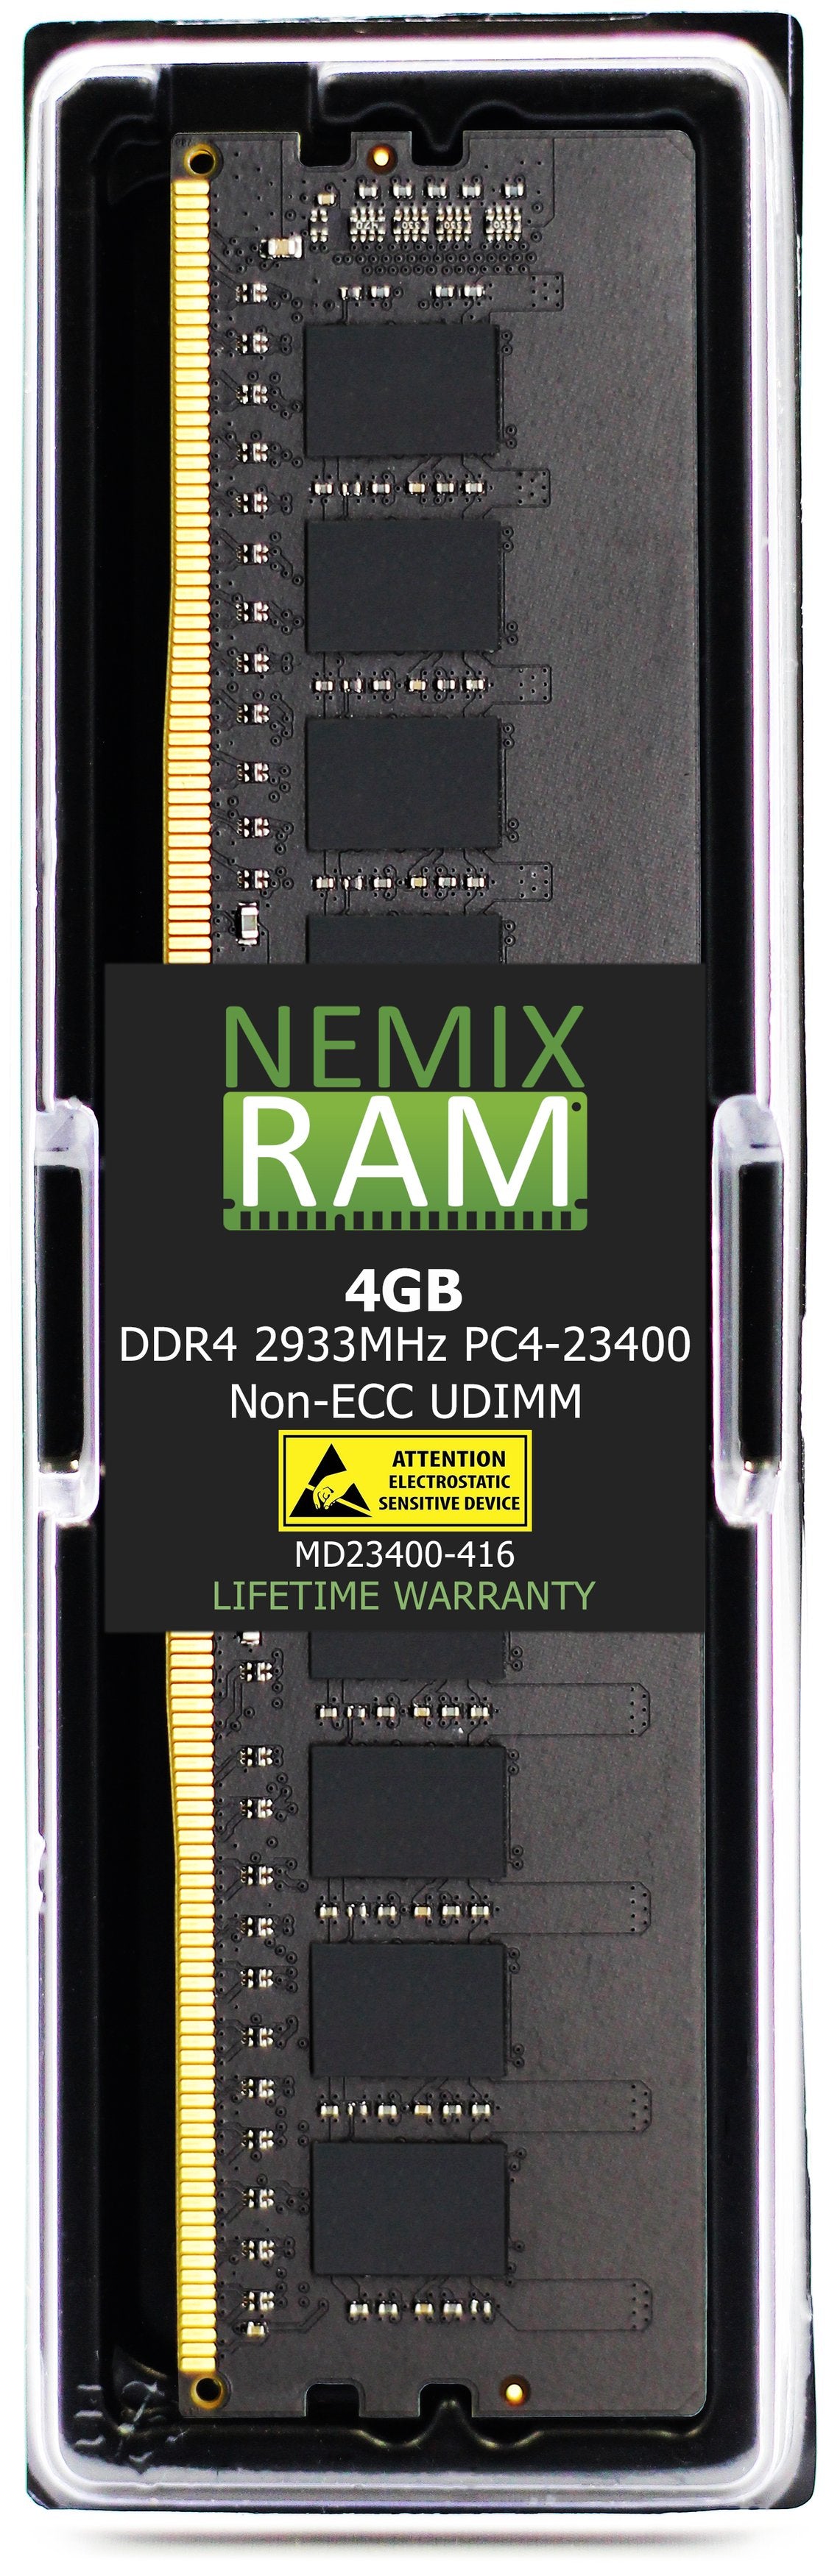 Hynix HMA851U6CJR6N-WM 4GB DDR4 2933MHZ PC4-23400 UDIMM Compatible Memory Module